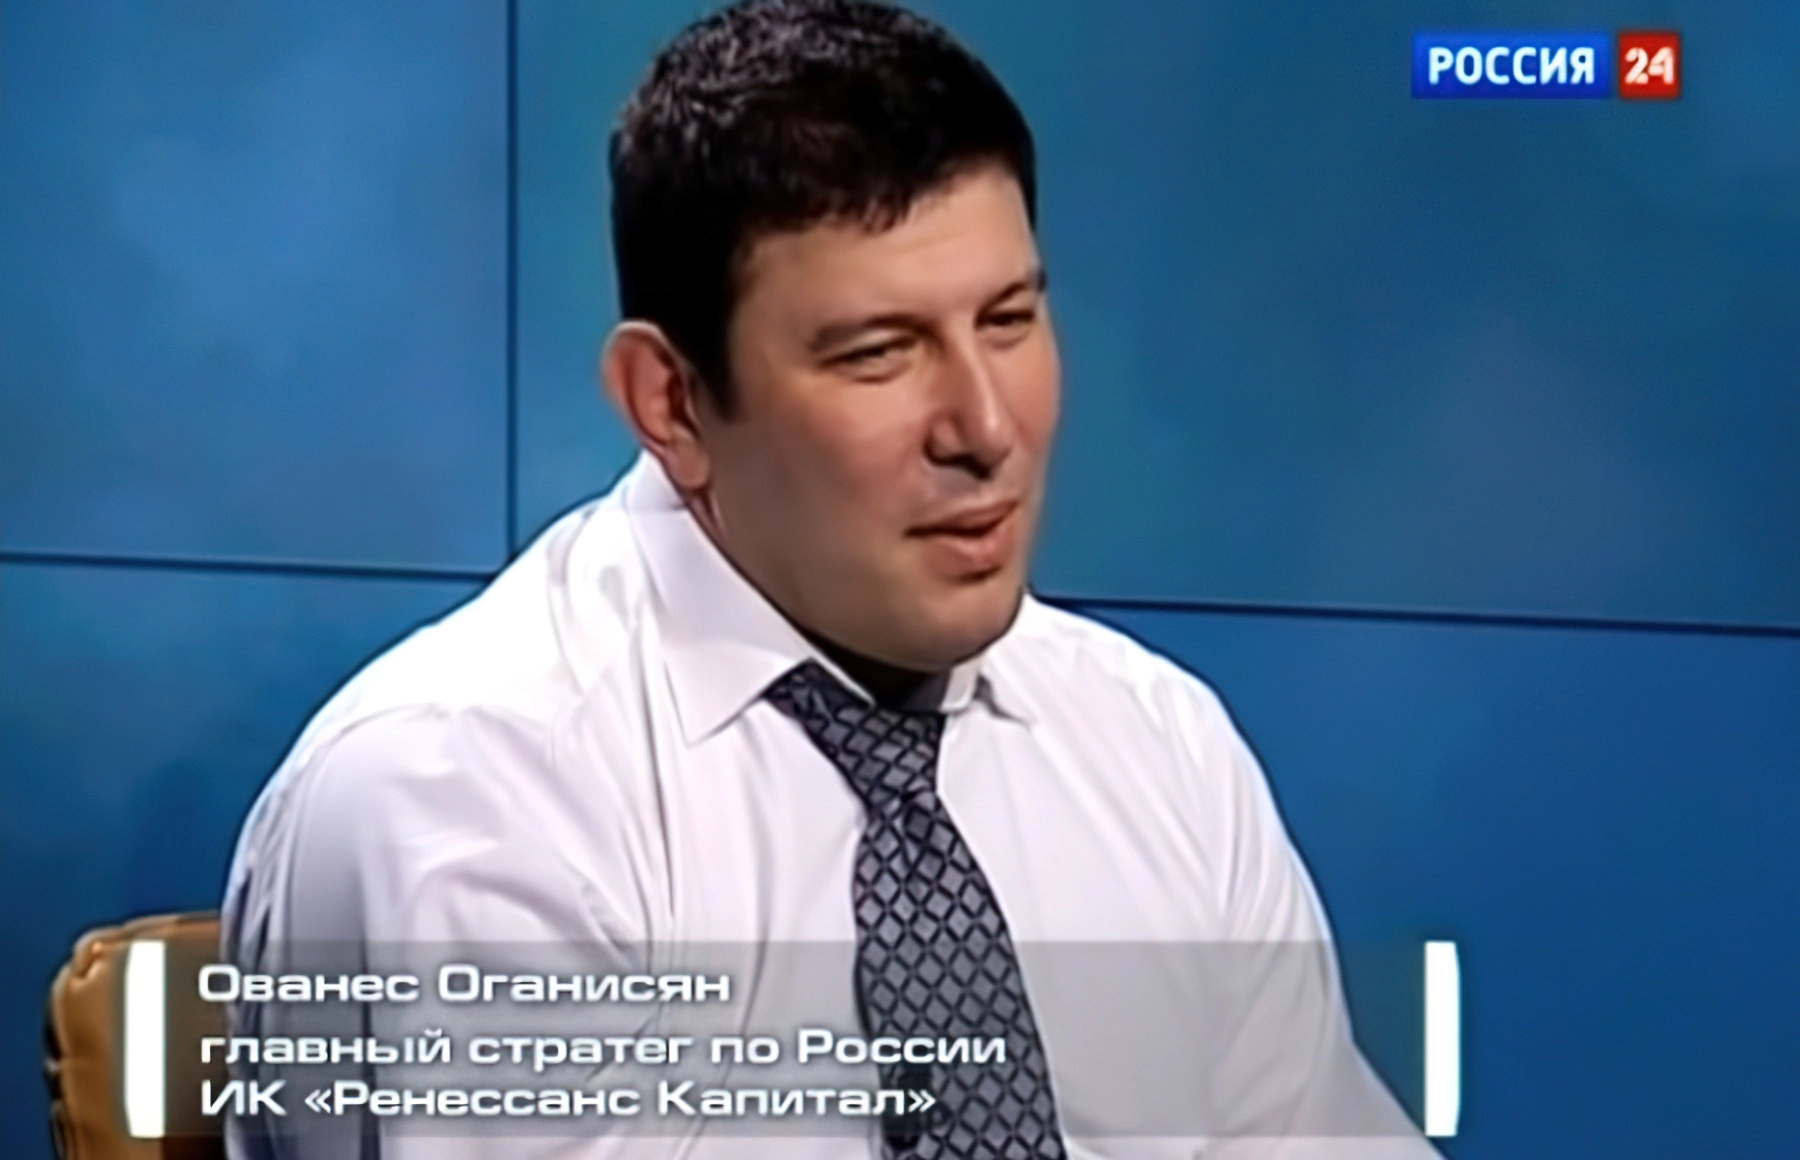 Ованес Оганисян - главный стратег по России инвестиционной компании «Ренессанс Капитал»